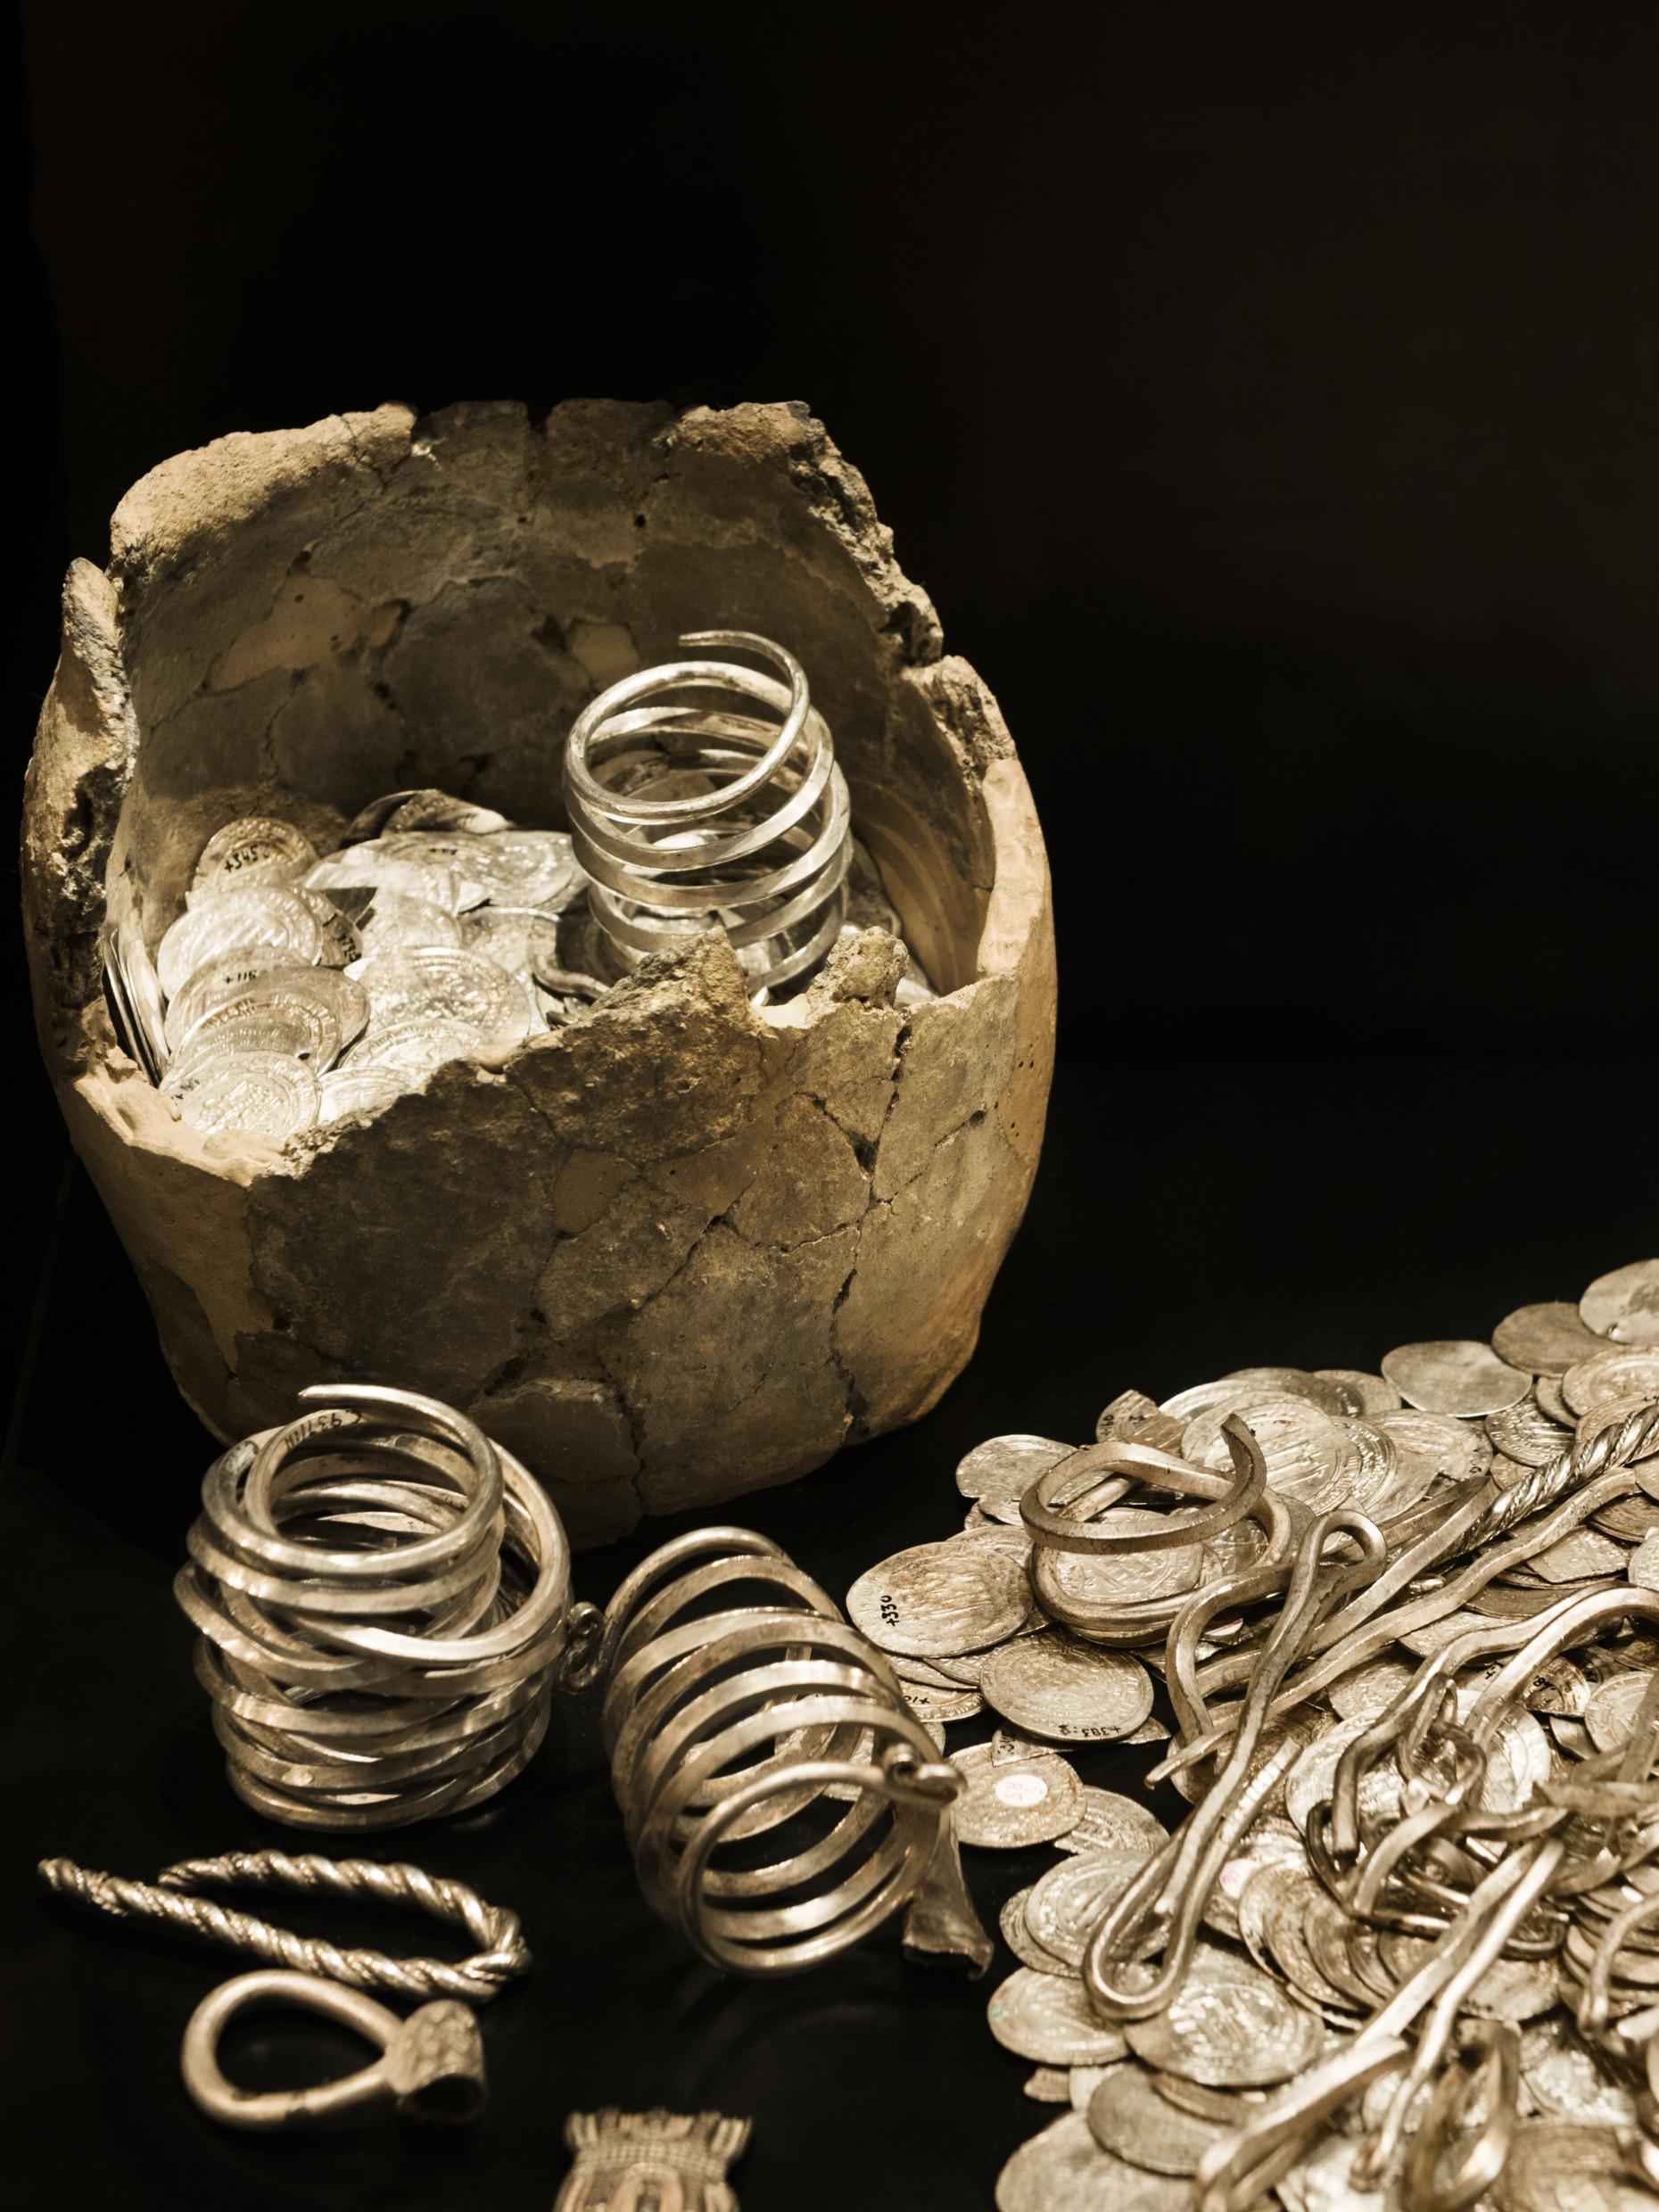 Oude zilveren en gouden munten en sieraden op een zwarte ondergrond.